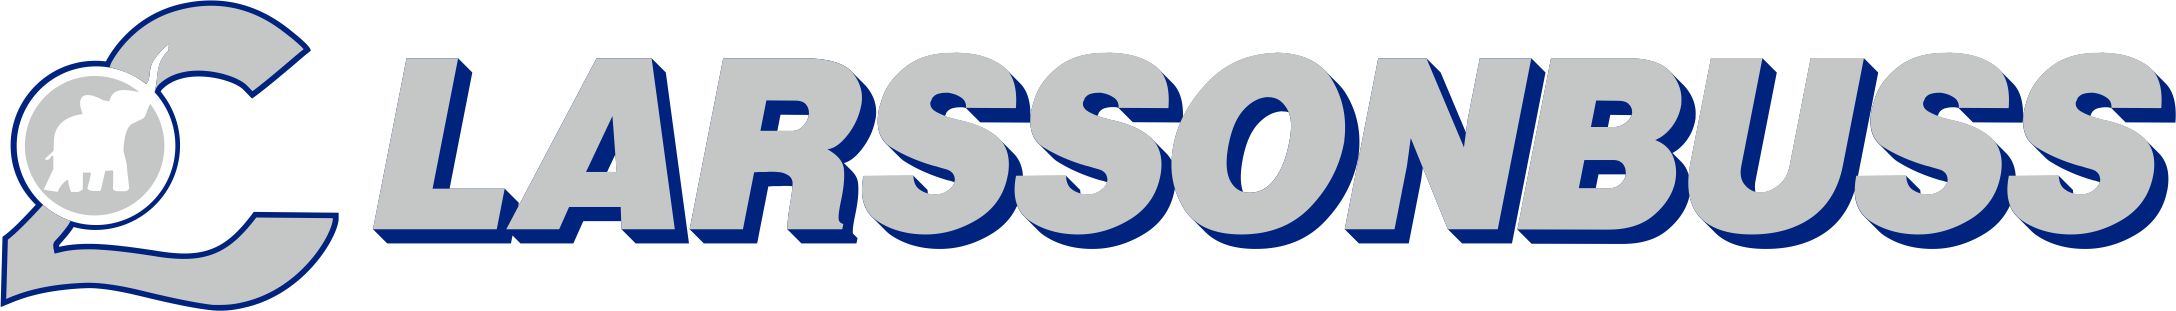 LarssonBuss logo (002)